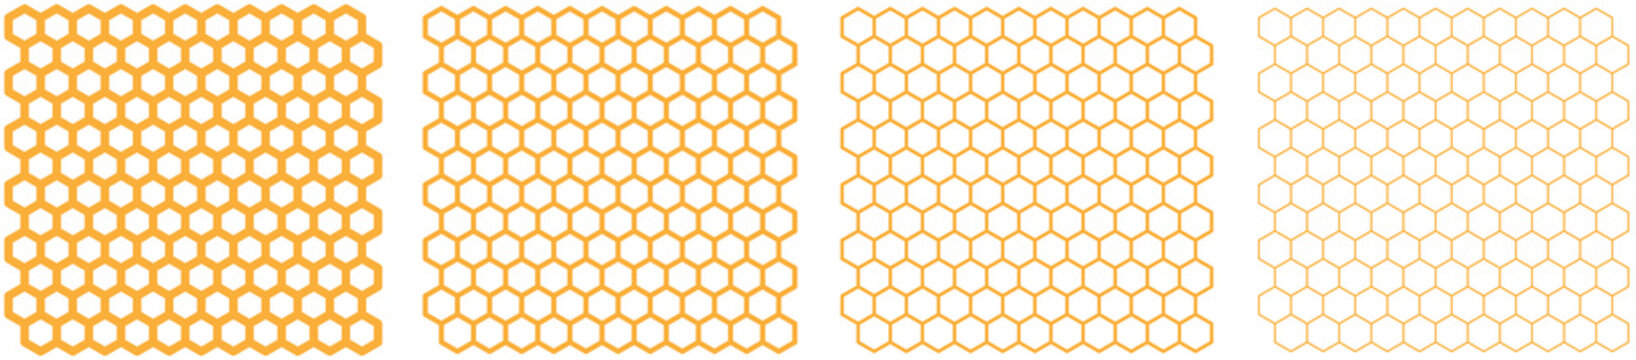 Hexagons / honeycomb